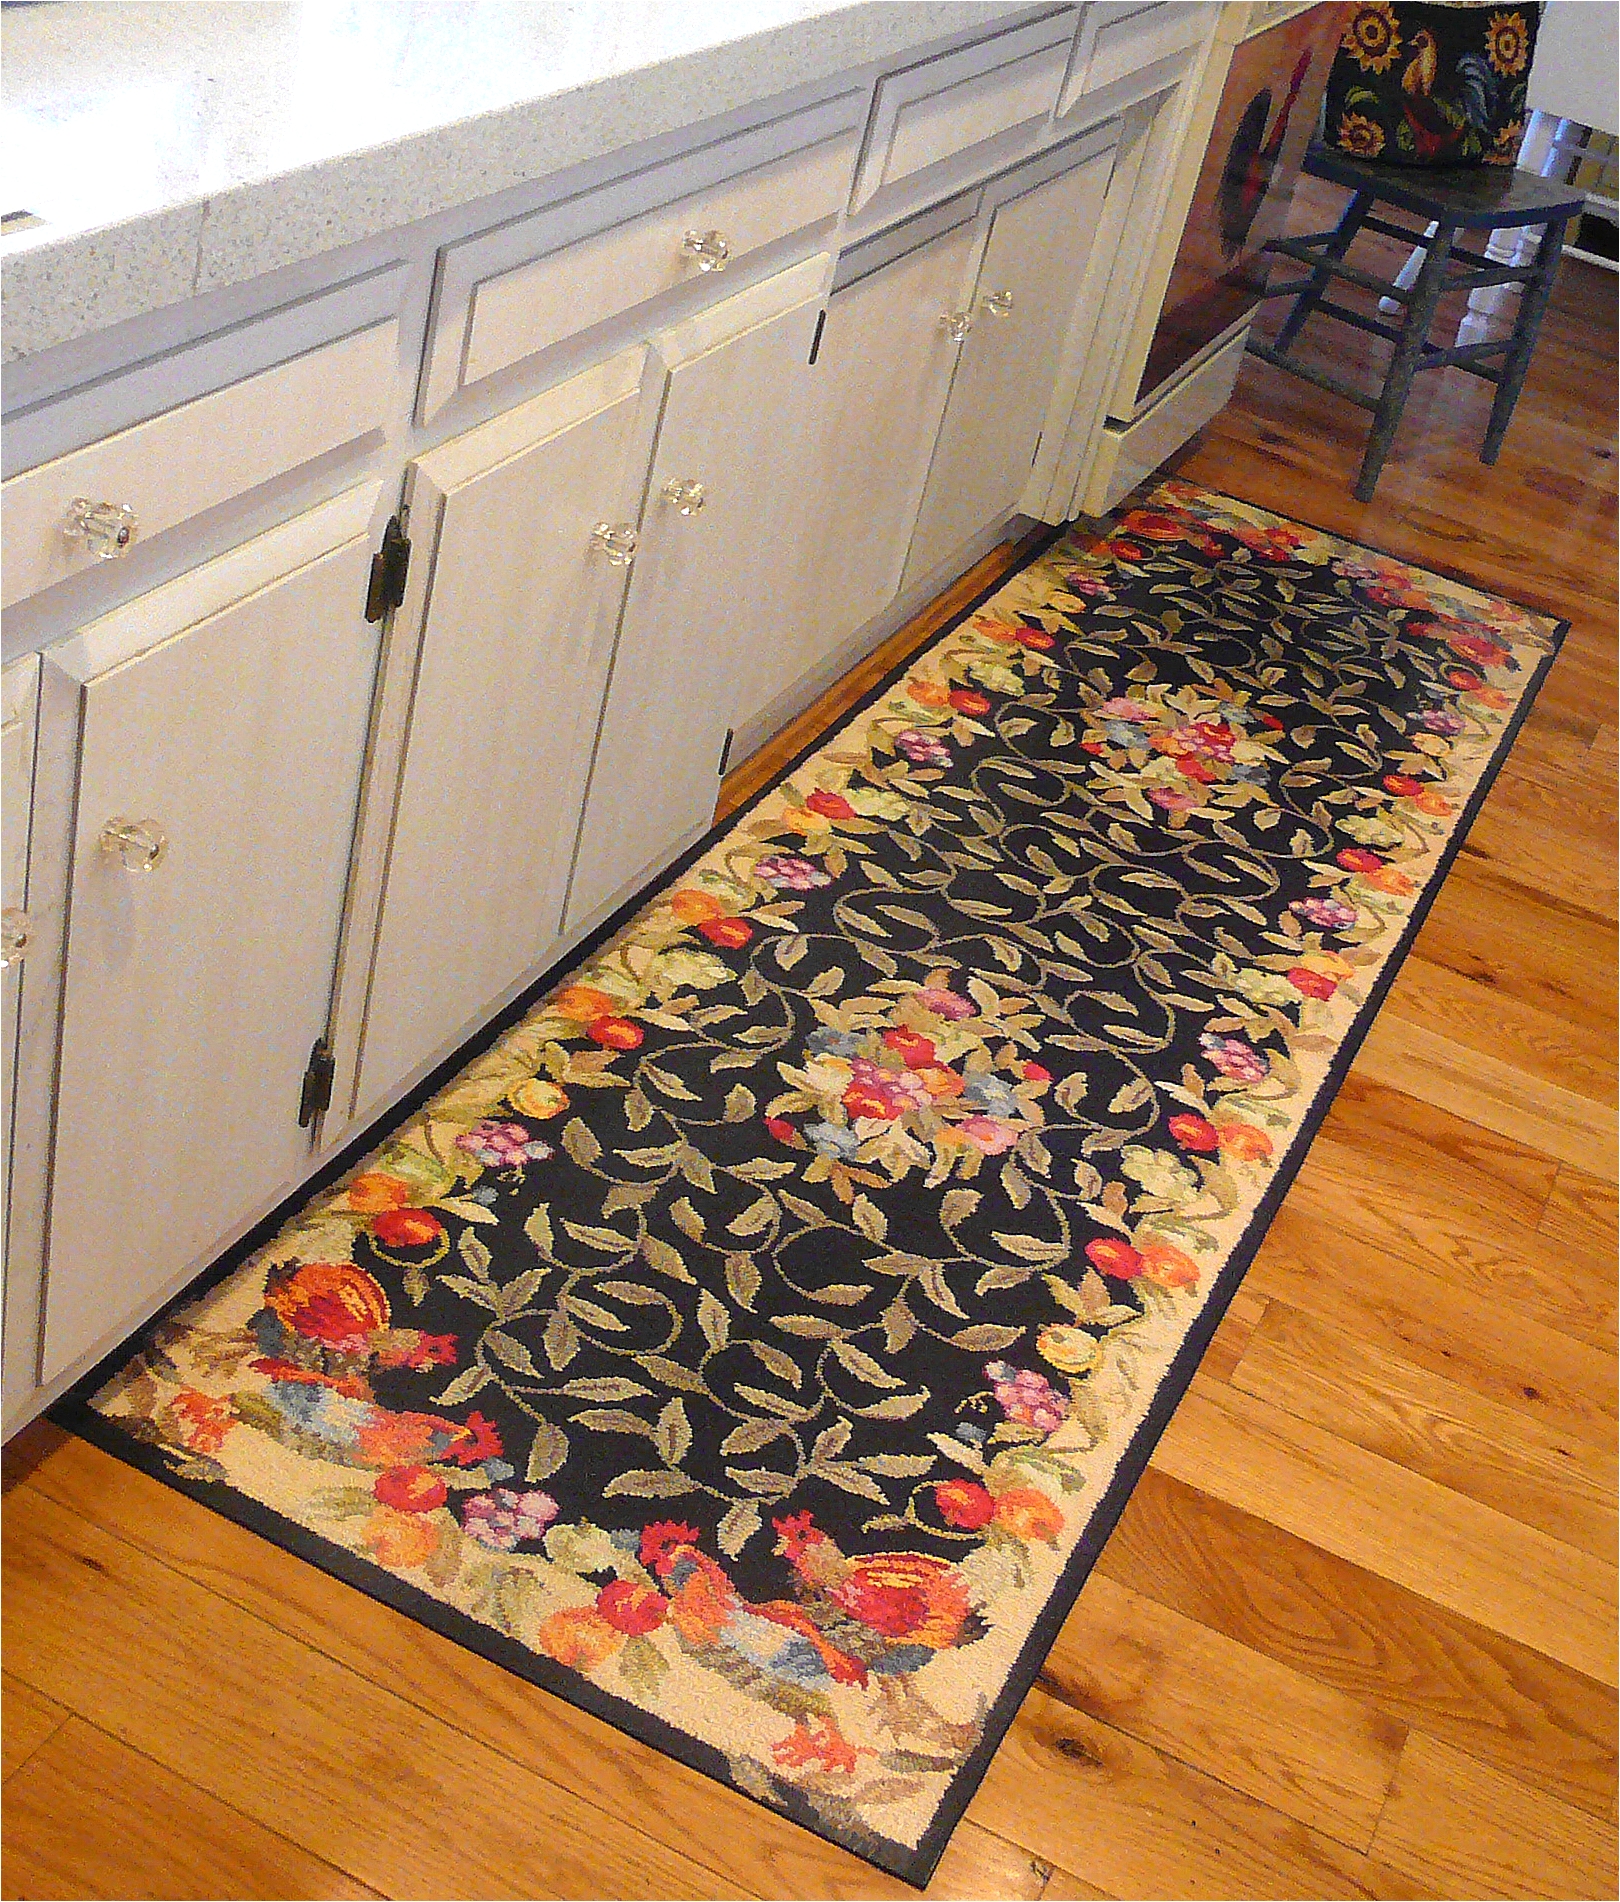 kitchen floor rugs modren floor decorative kitchen floor mats rugs rubber restaurant padded sink mat